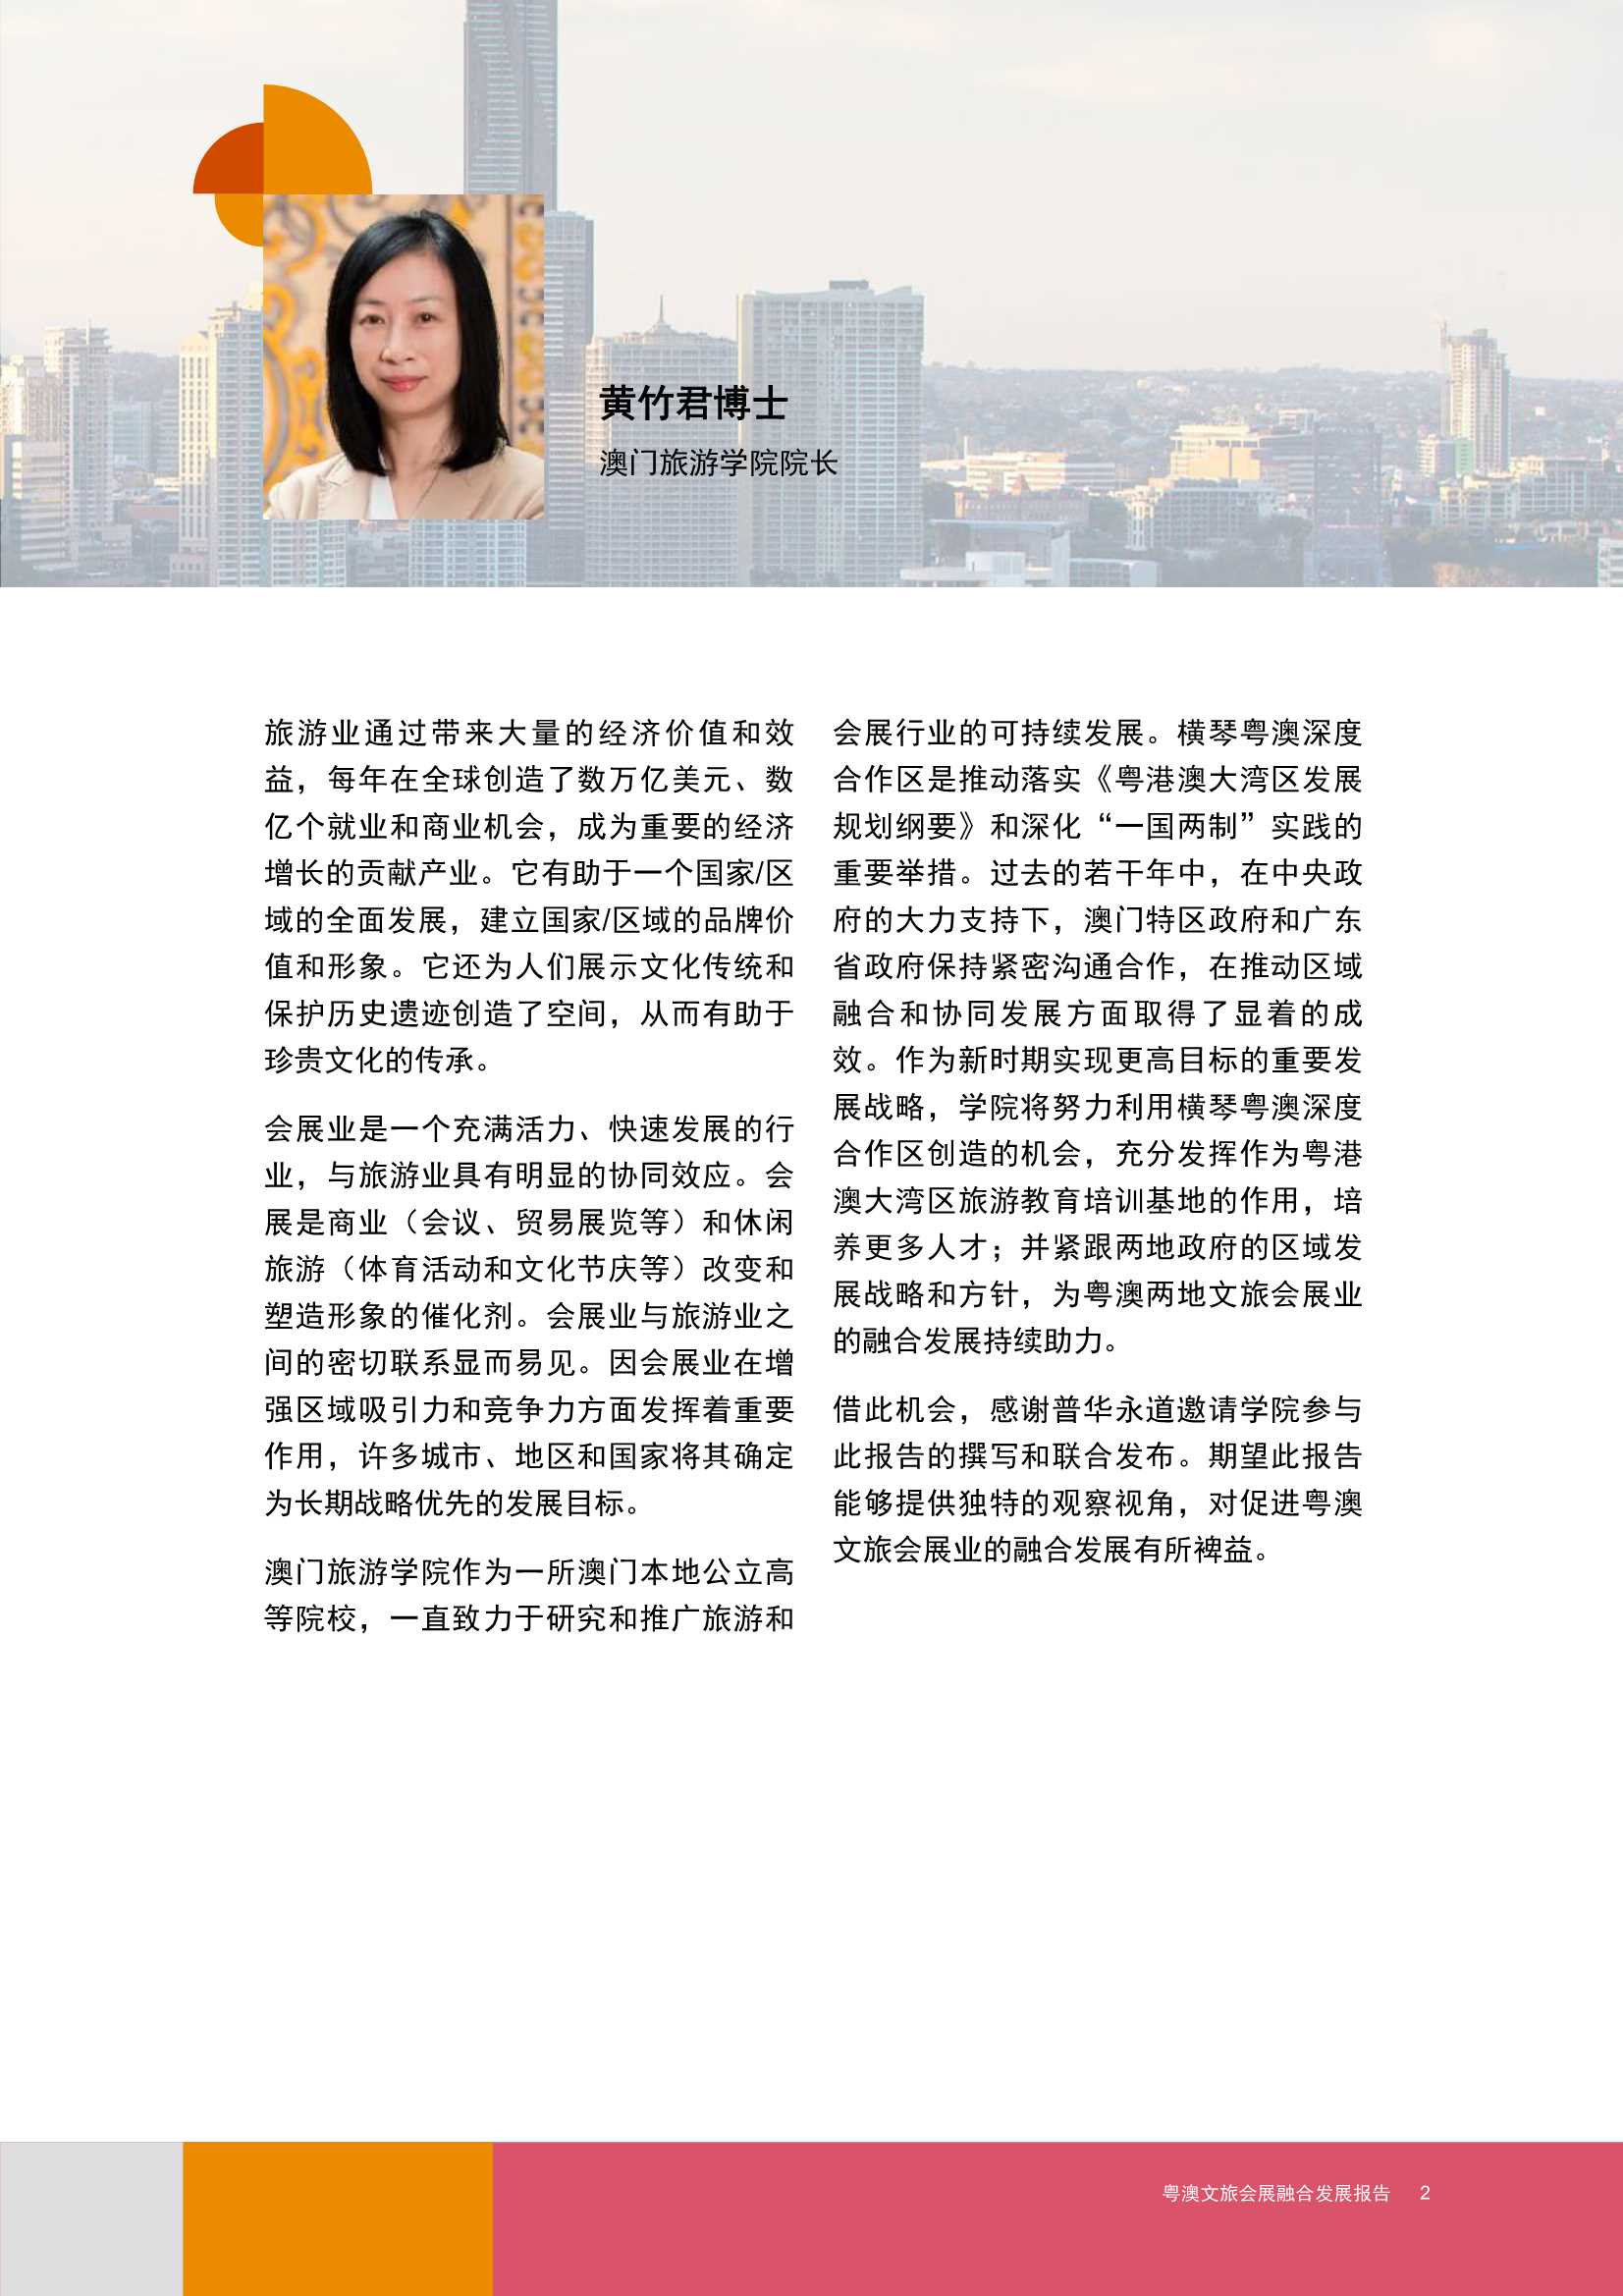 普华永道-2021粤澳文旅会展融合发展报告-2021.12-68页